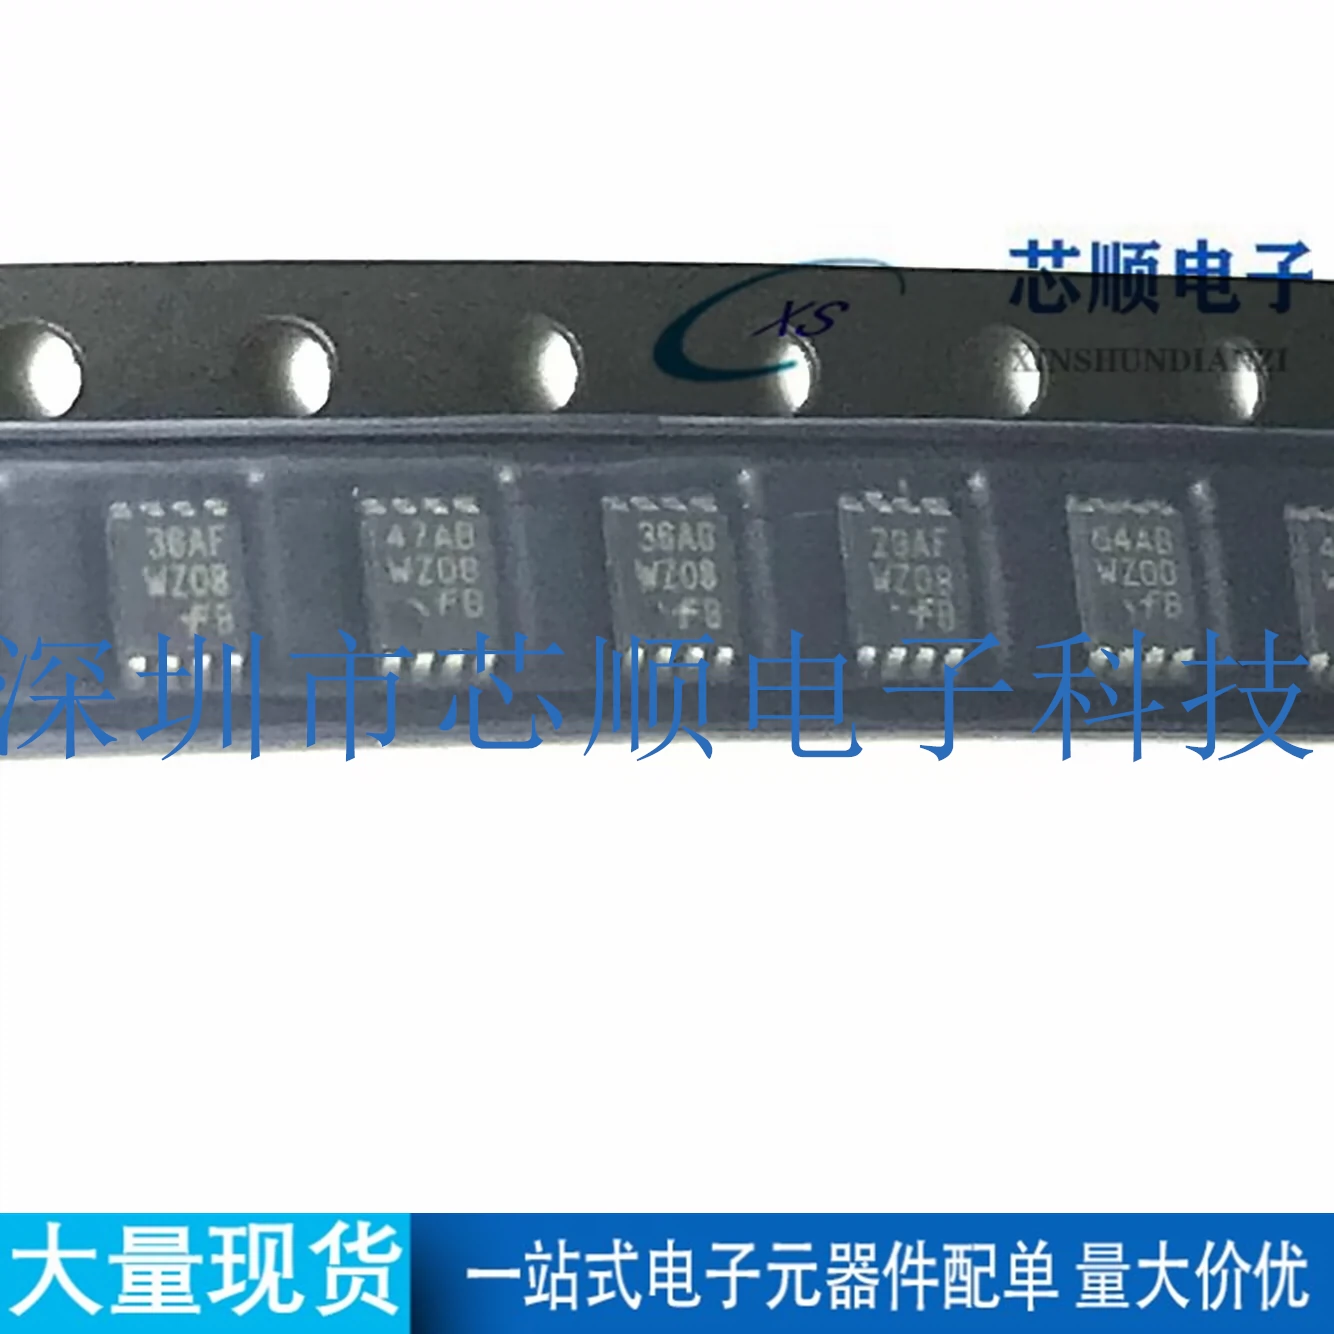 全新原装进口NC7WZ08K8X现货可直拍正品丝印WZ08 VSOP-8即拍即发-Taobao